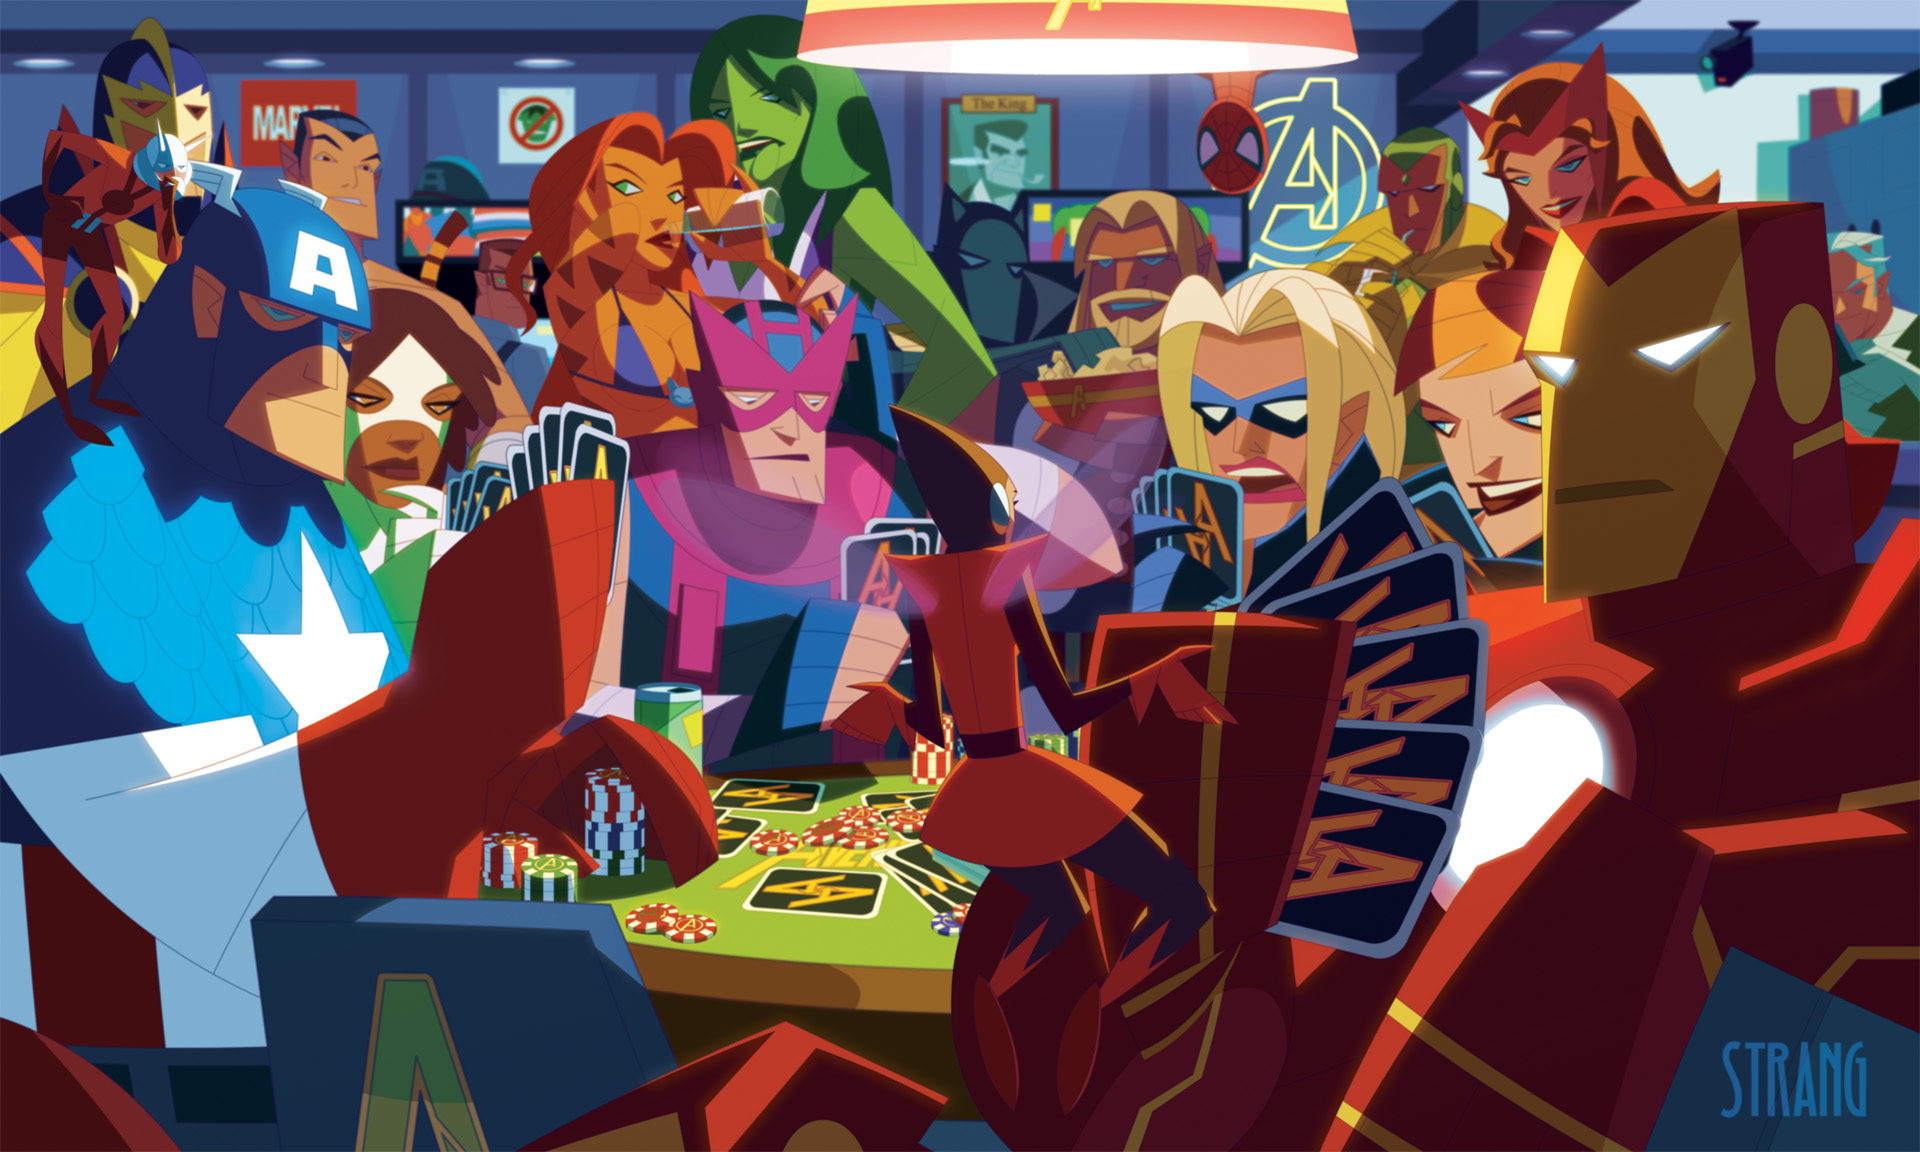 Железный Человек, Тор, Человек-паук, Капитан Америка, покер, альтернативных художественные, фишки для покера, Женщина-Халк, Марвел комиксы, Мстители, Hawkeye, Алая Ведьма, игральные карты, Брюс Баннер, НэморSubmariner, Antman, Quick Silver - обои на рабочий стол